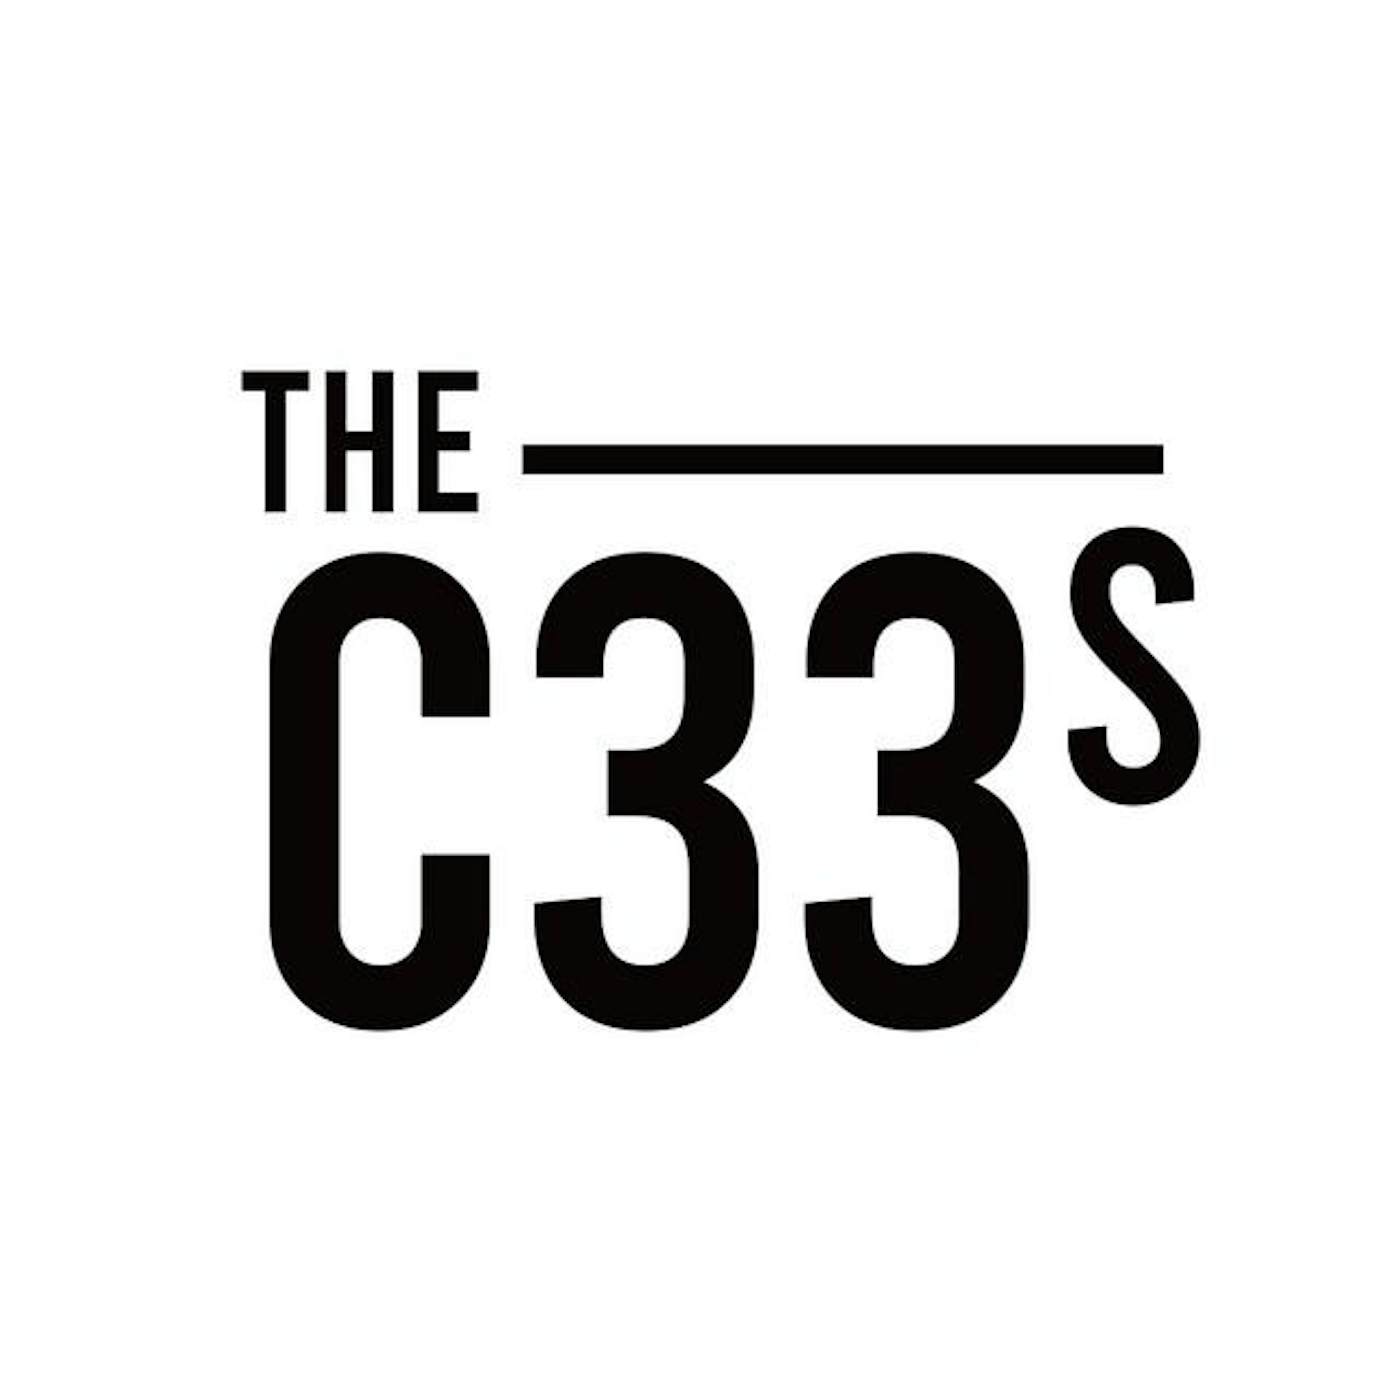 The C33s